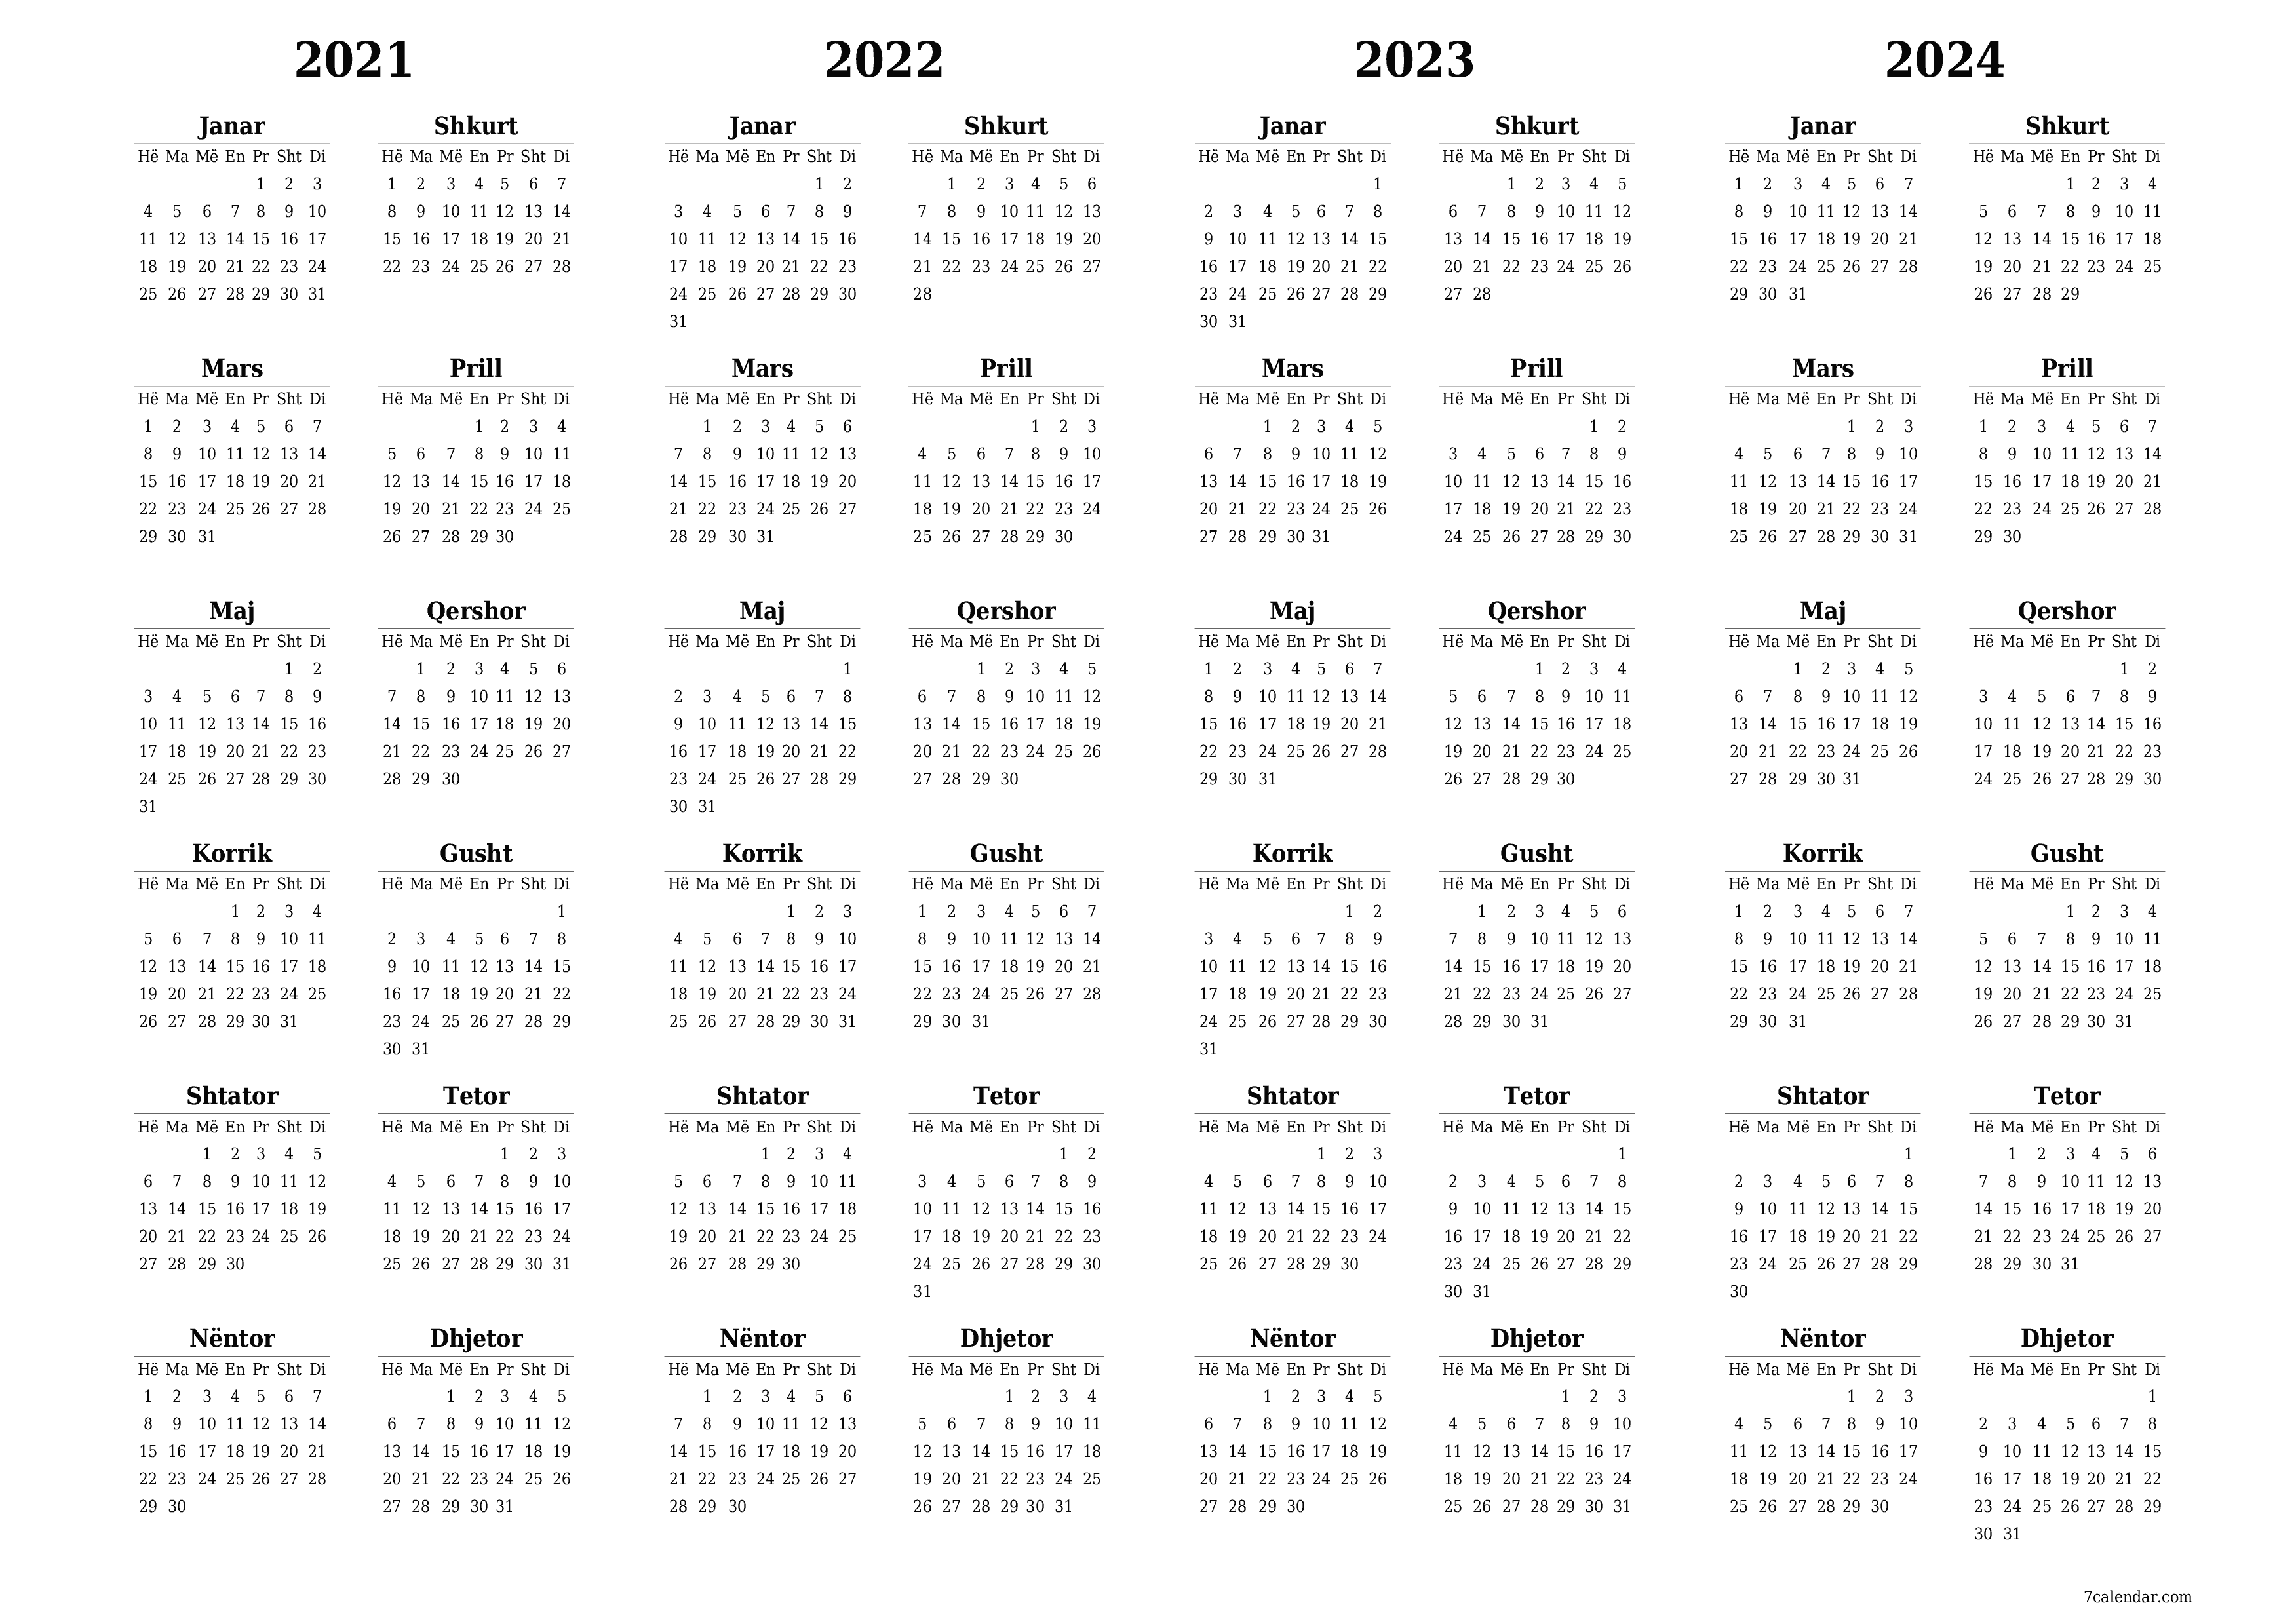  i printueshëm muri shabllon falashorizontale Vjetore kalendar Tetor (Tet) 2021